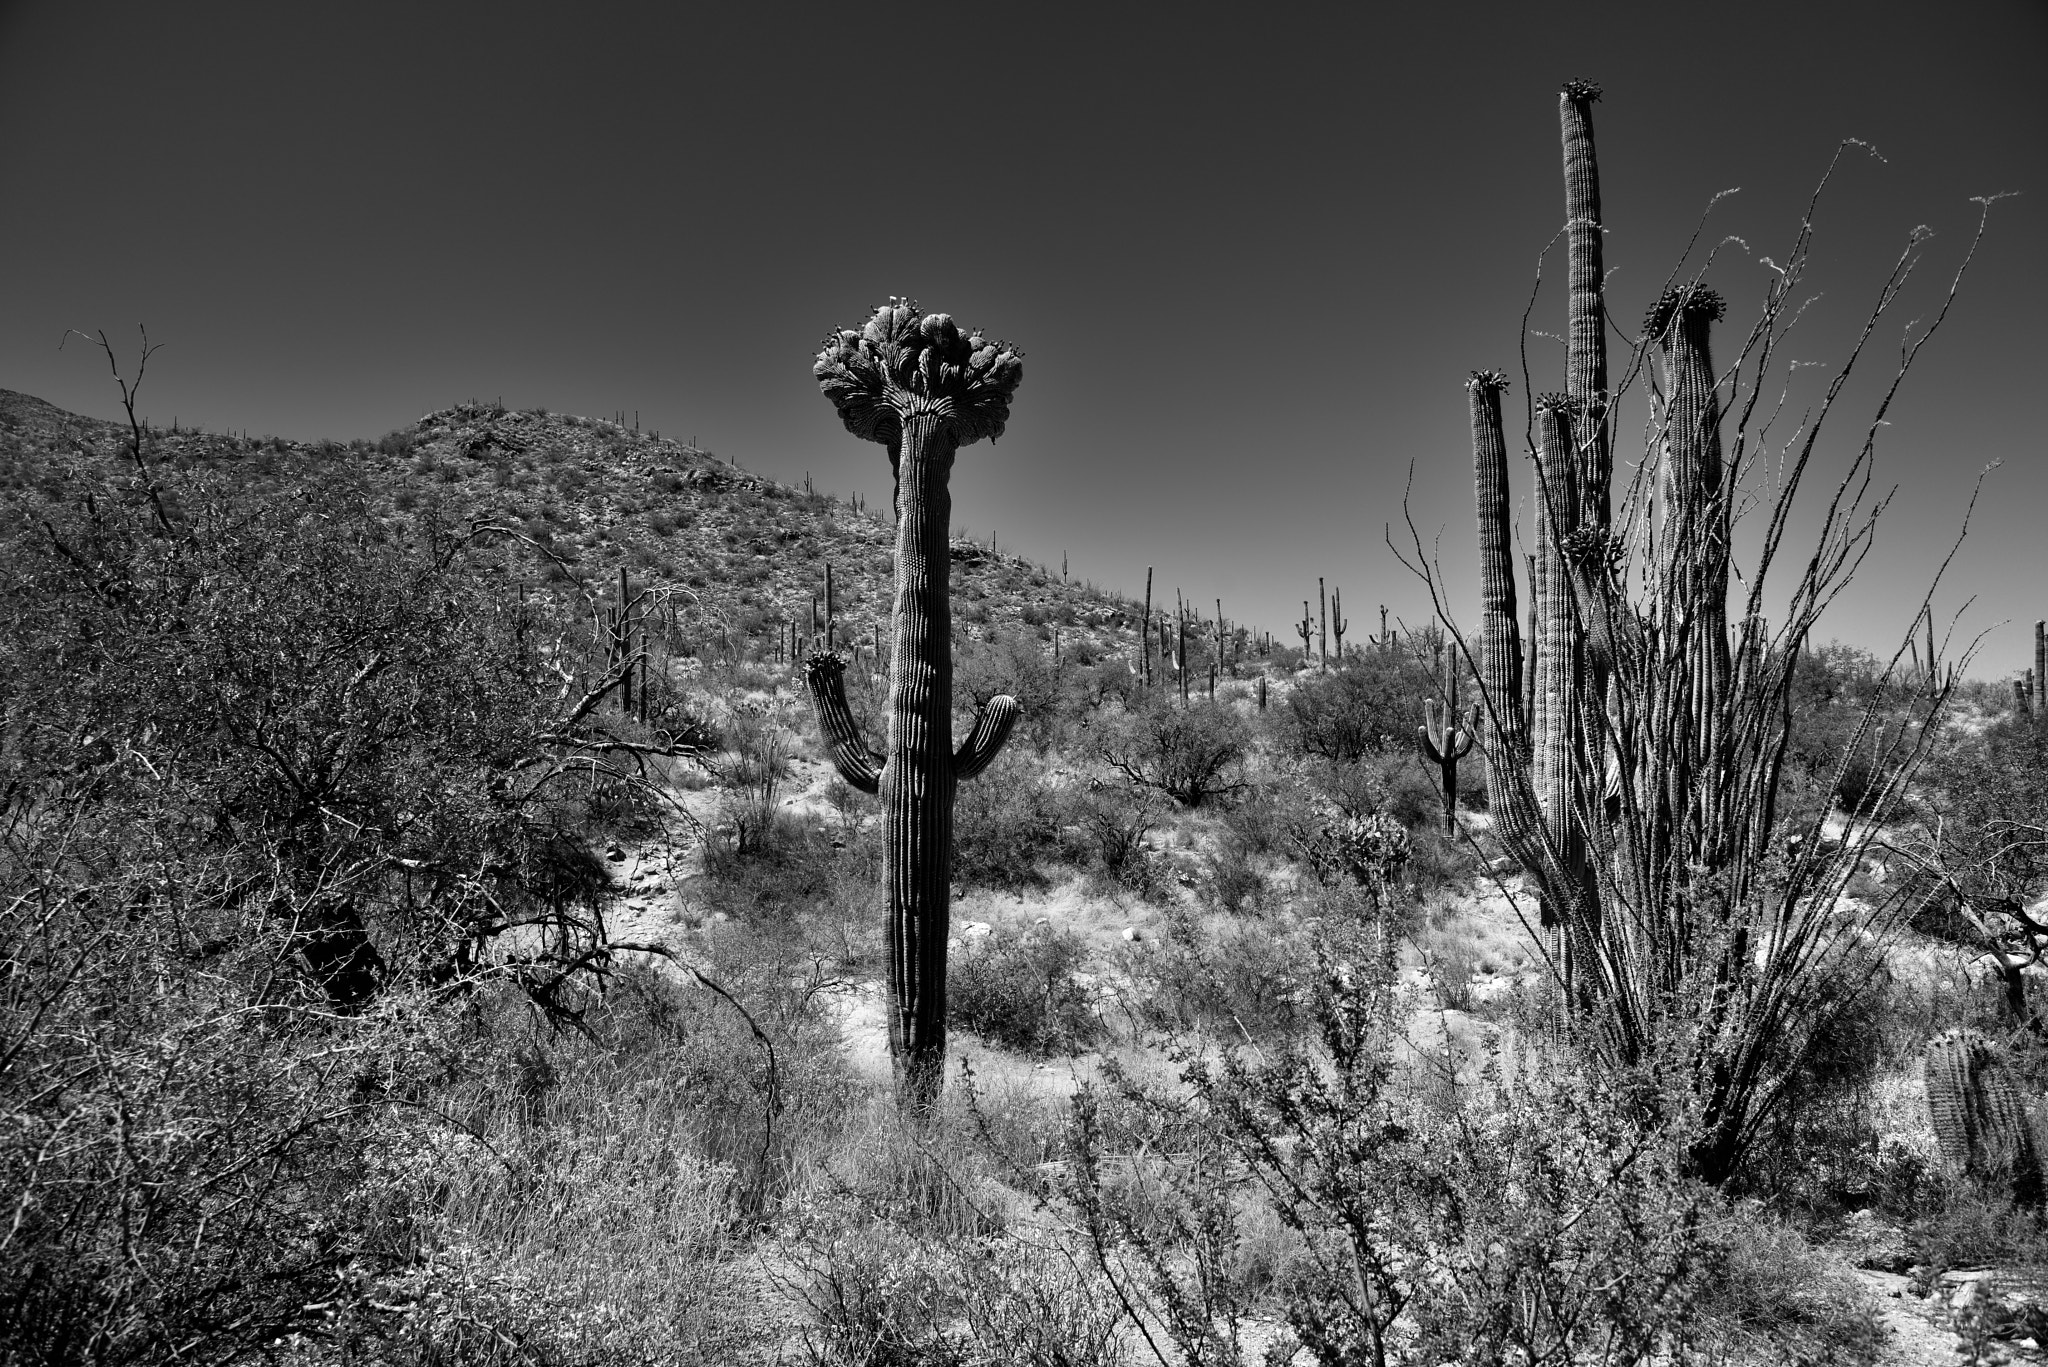 Nikon D800E + Nikon AF-S Nikkor 24-120mm F4G ED VR sample photo. Crested saguaro along with a hillside of many other saguaro cactus (black & white) photography